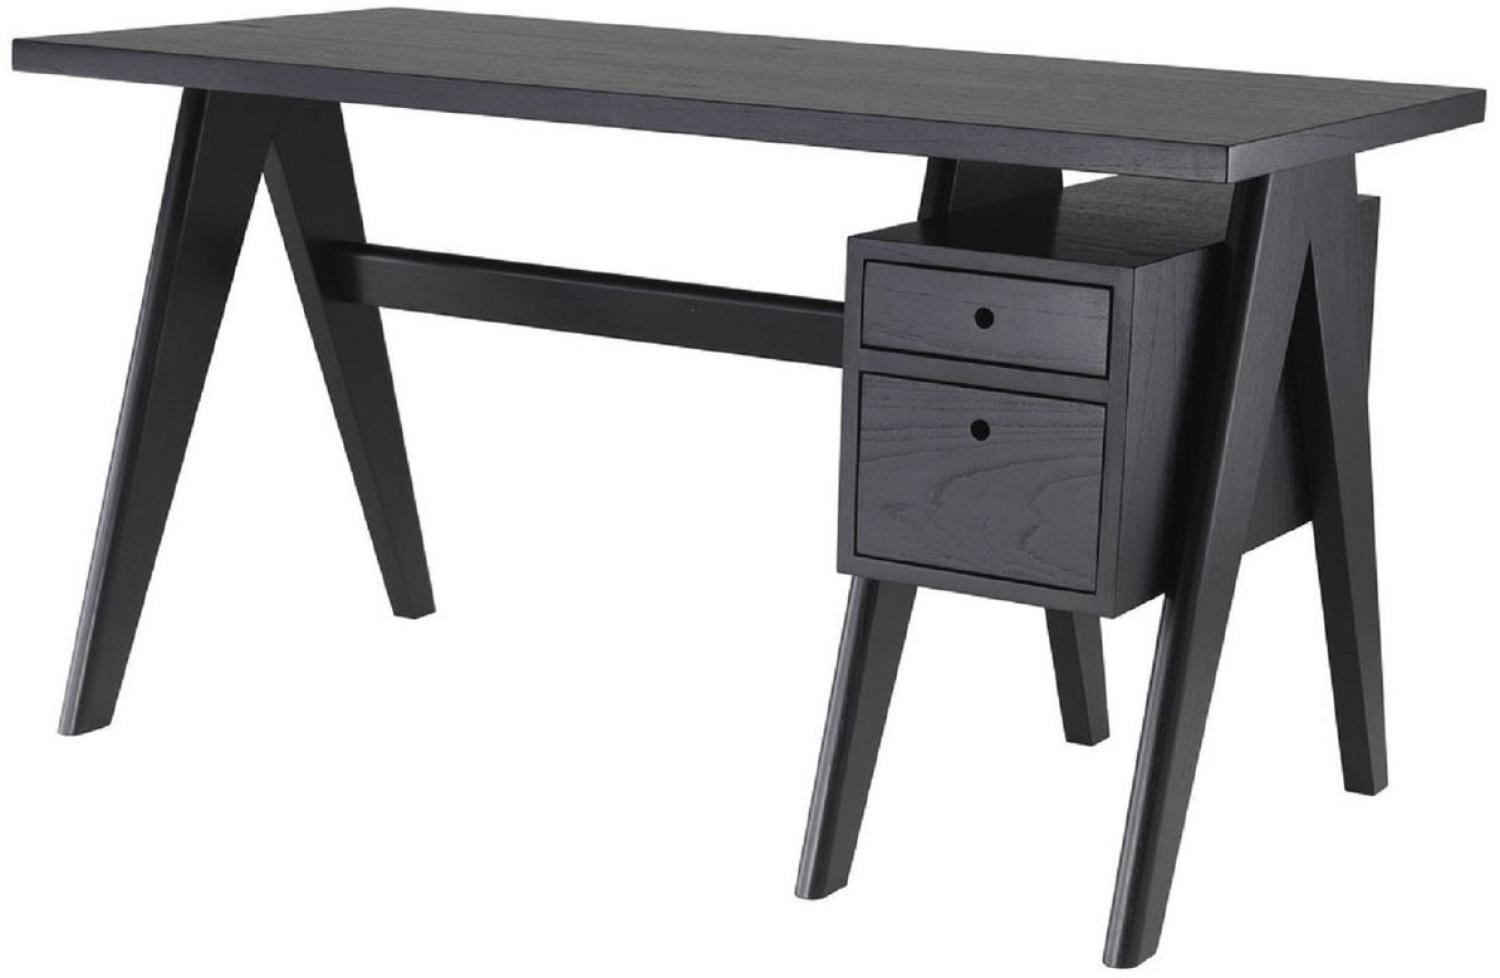 Casa Padrino Luxus Schreibtisch Schwarz 140 x 69 x H. 77 cm - Eleganter Massivholz Schreibtisch mit 2 Schubladen - Luxus Büro Möbel Bild 1